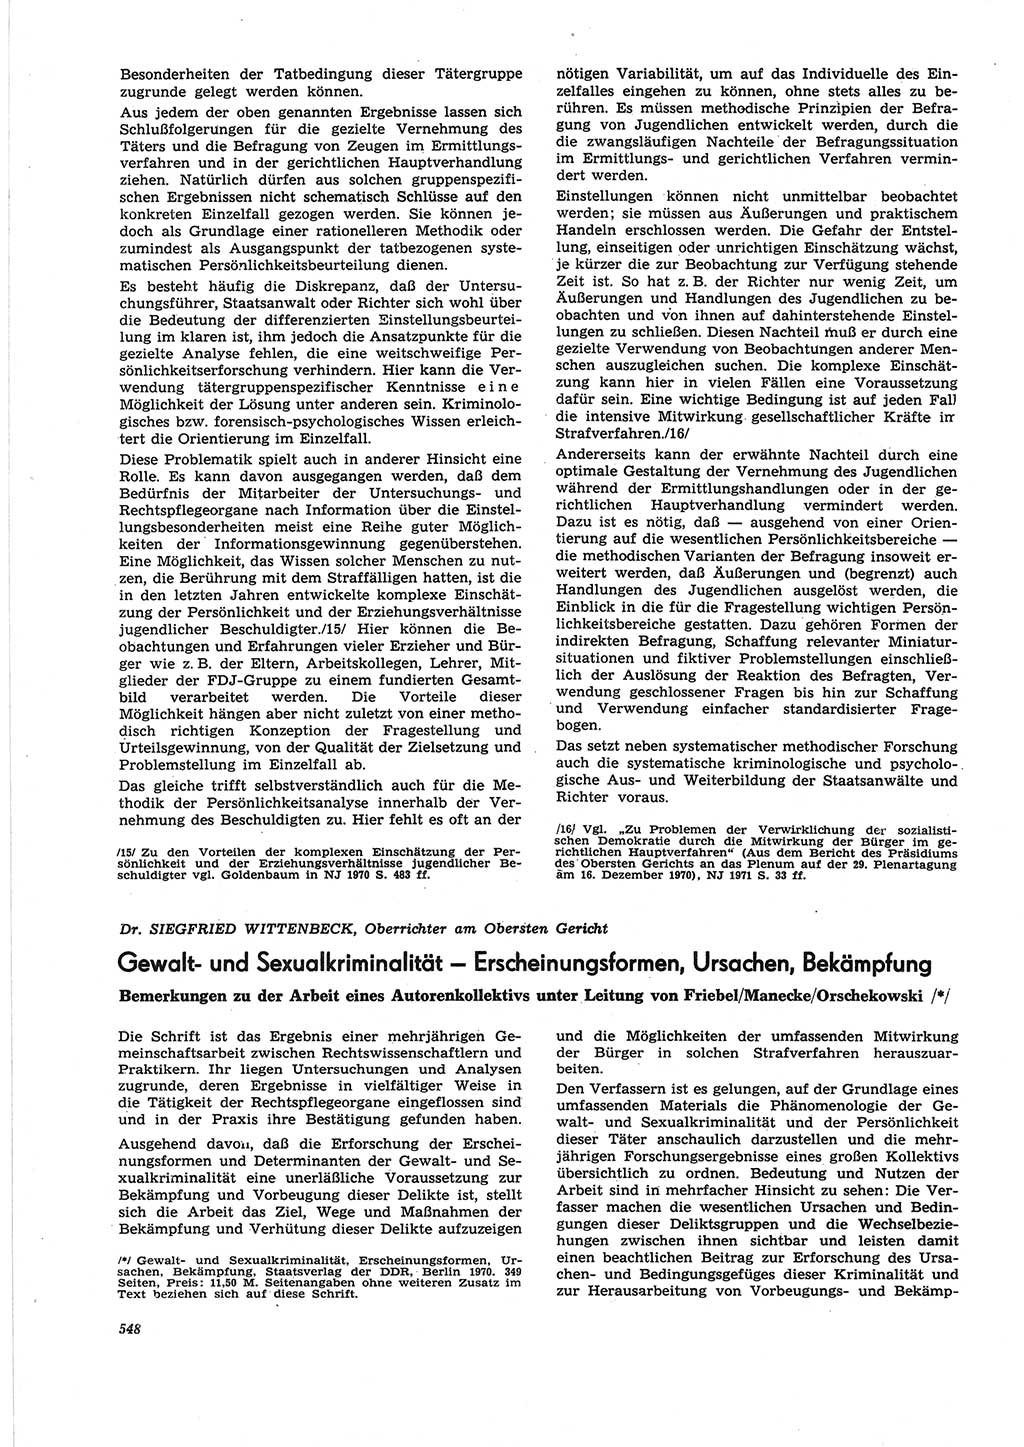 Neue Justiz (NJ), Zeitschrift für Recht und Rechtswissenschaft [Deutsche Demokratische Republik (DDR)], 25. Jahrgang 1971, Seite 548 (NJ DDR 1971, S. 548)